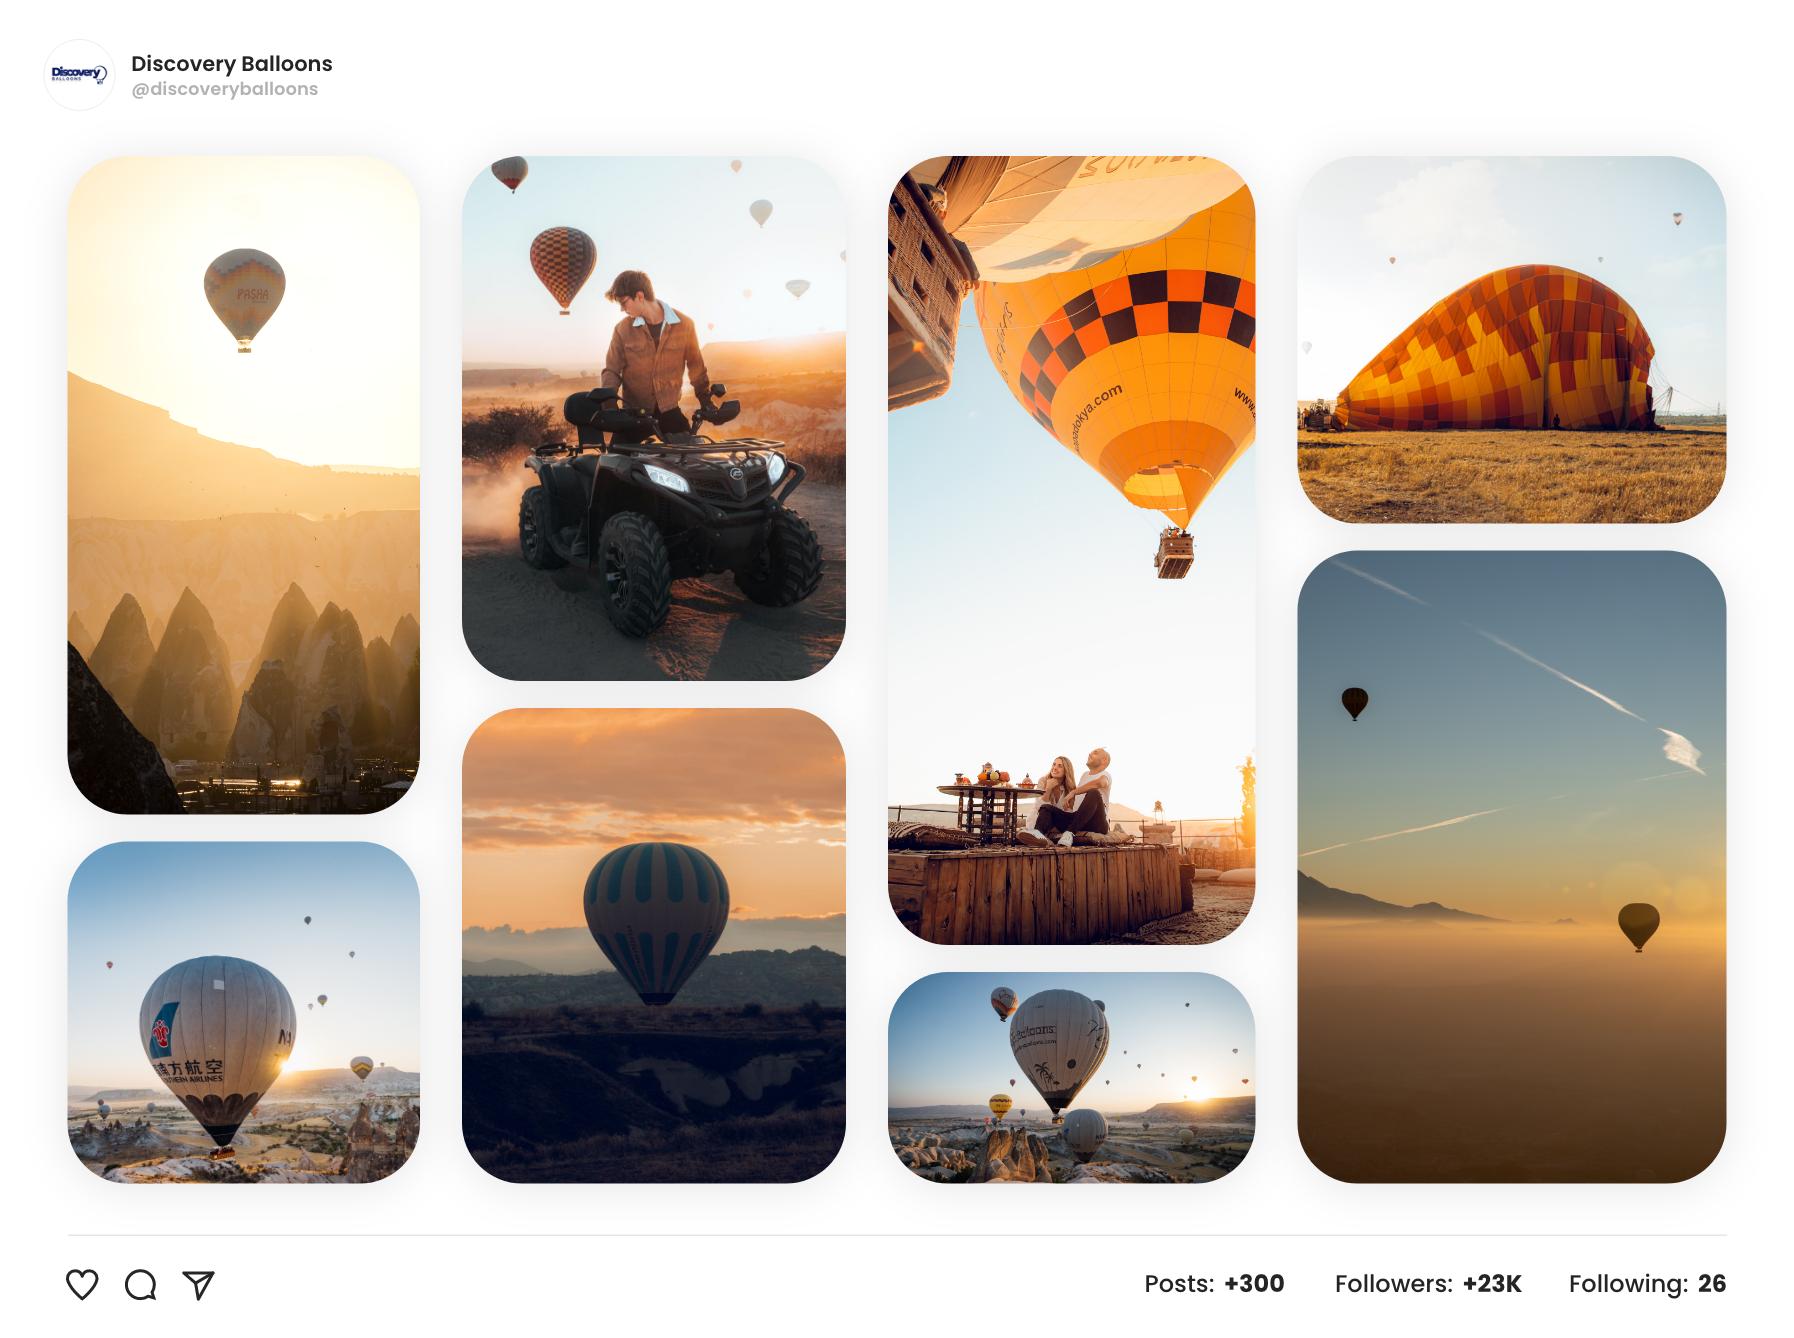 cappadocia balloon tour travel